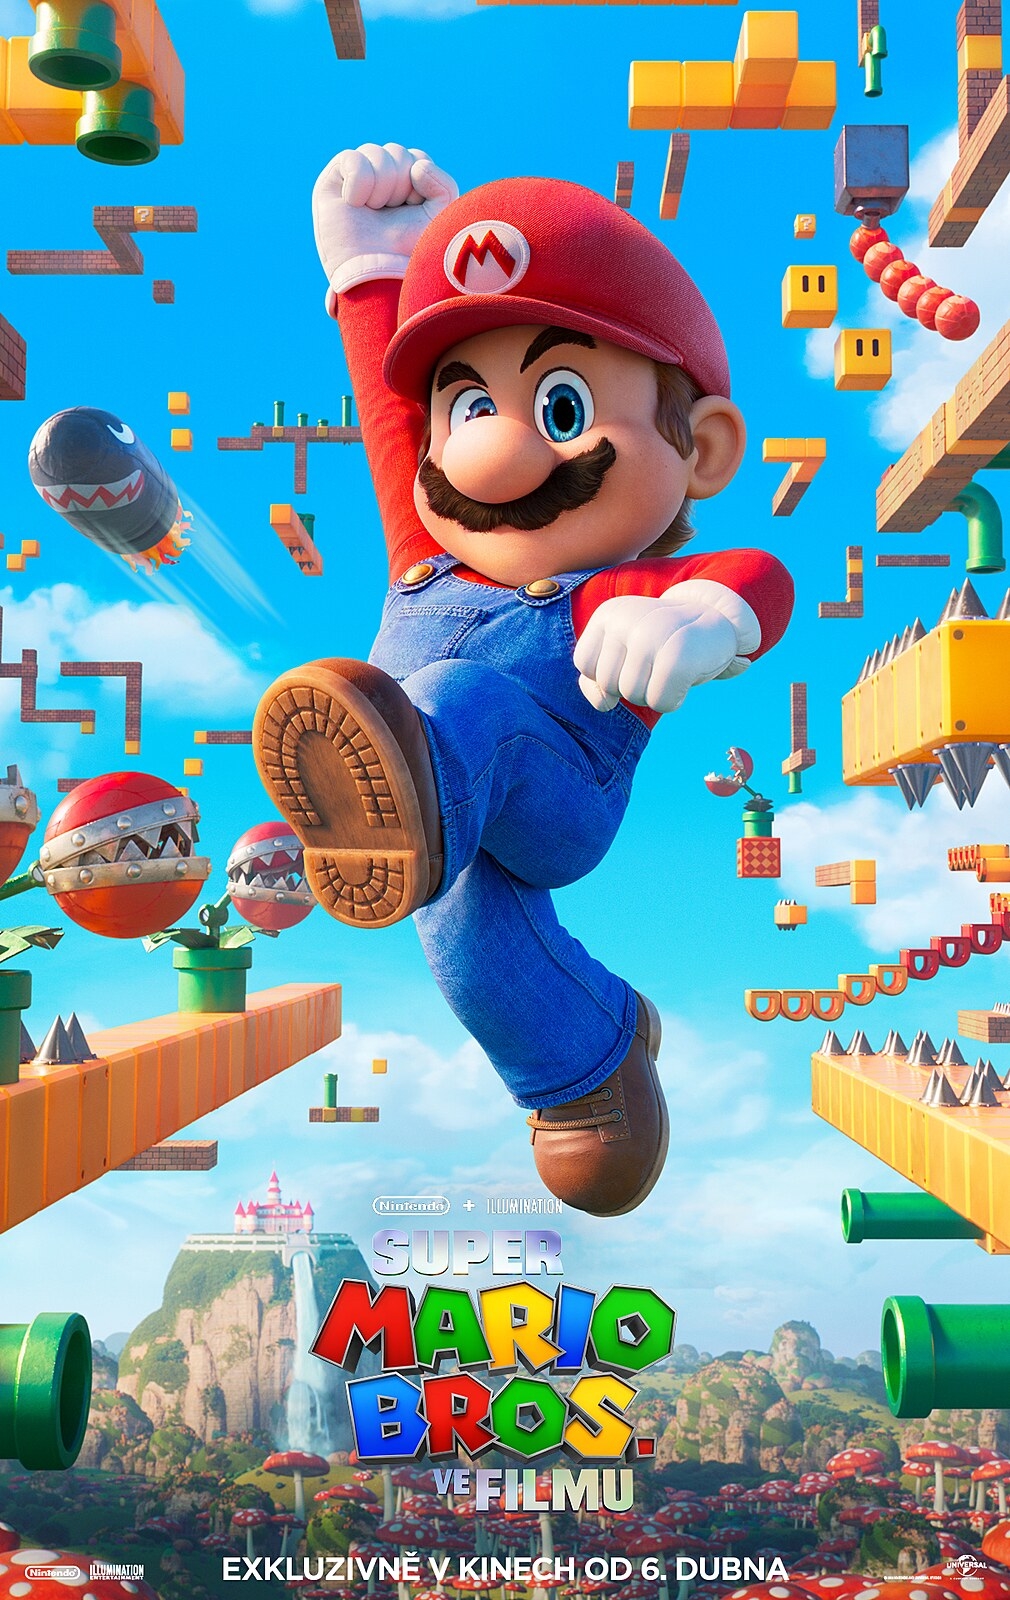 Que Mario? 5 jogos que você precisa curtir no Switch antes de ver o filme